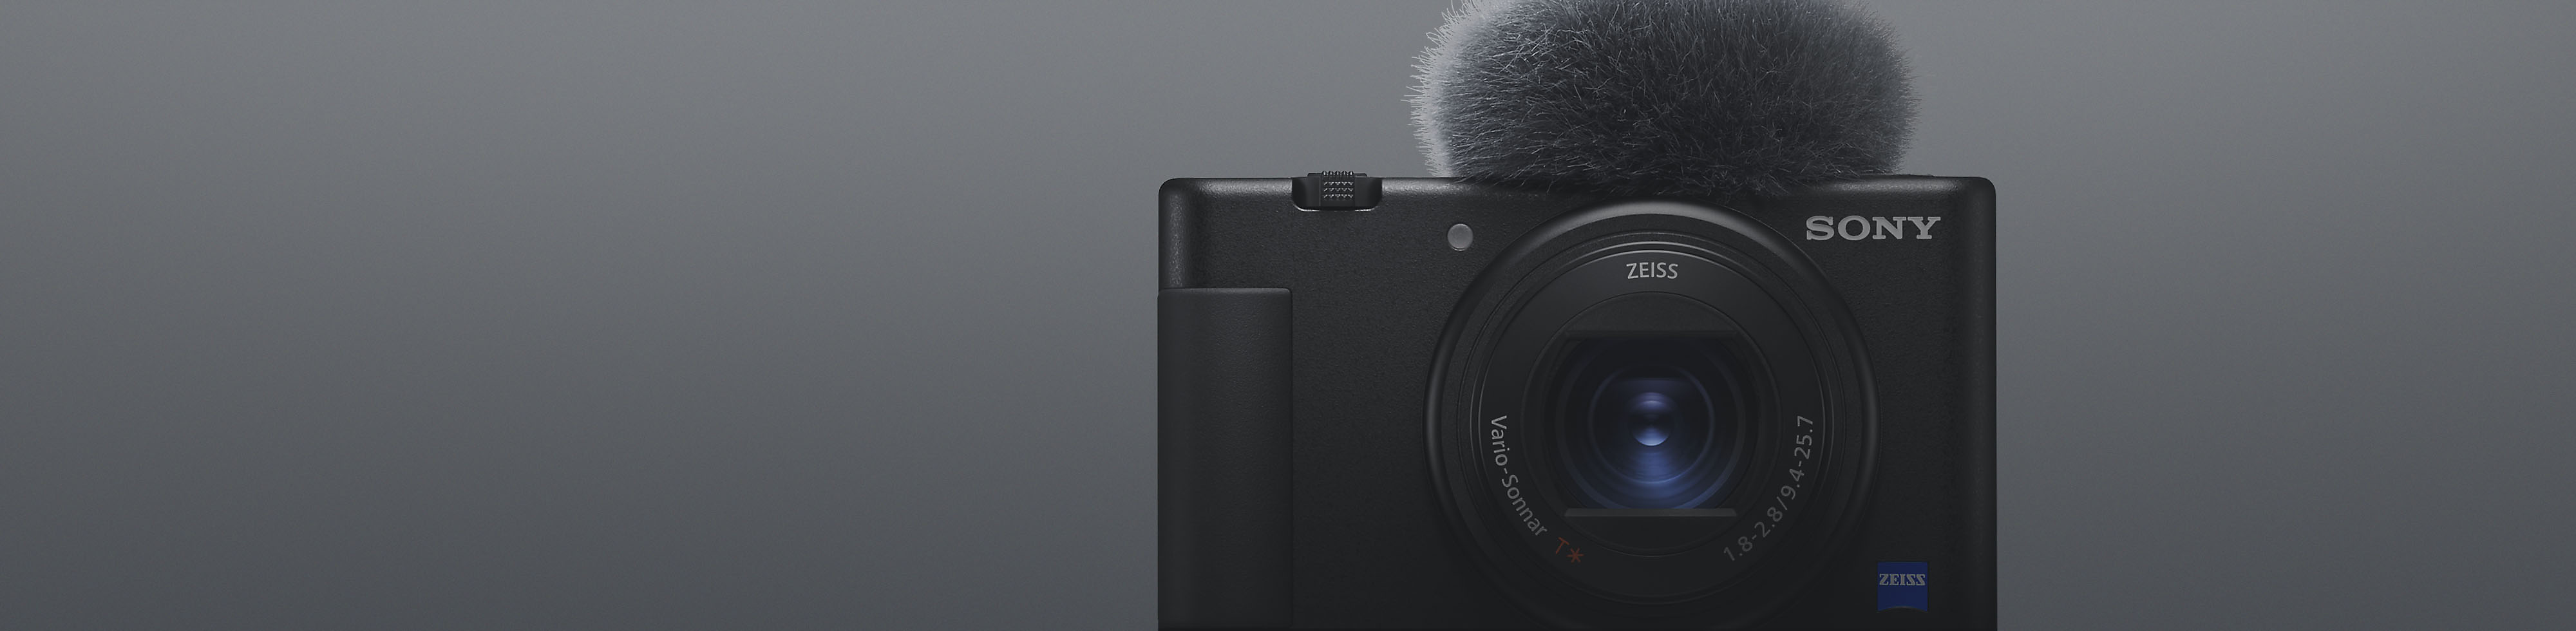 Vooraanzicht van zwarte compactcamera van Sony met bevestigde microfoon